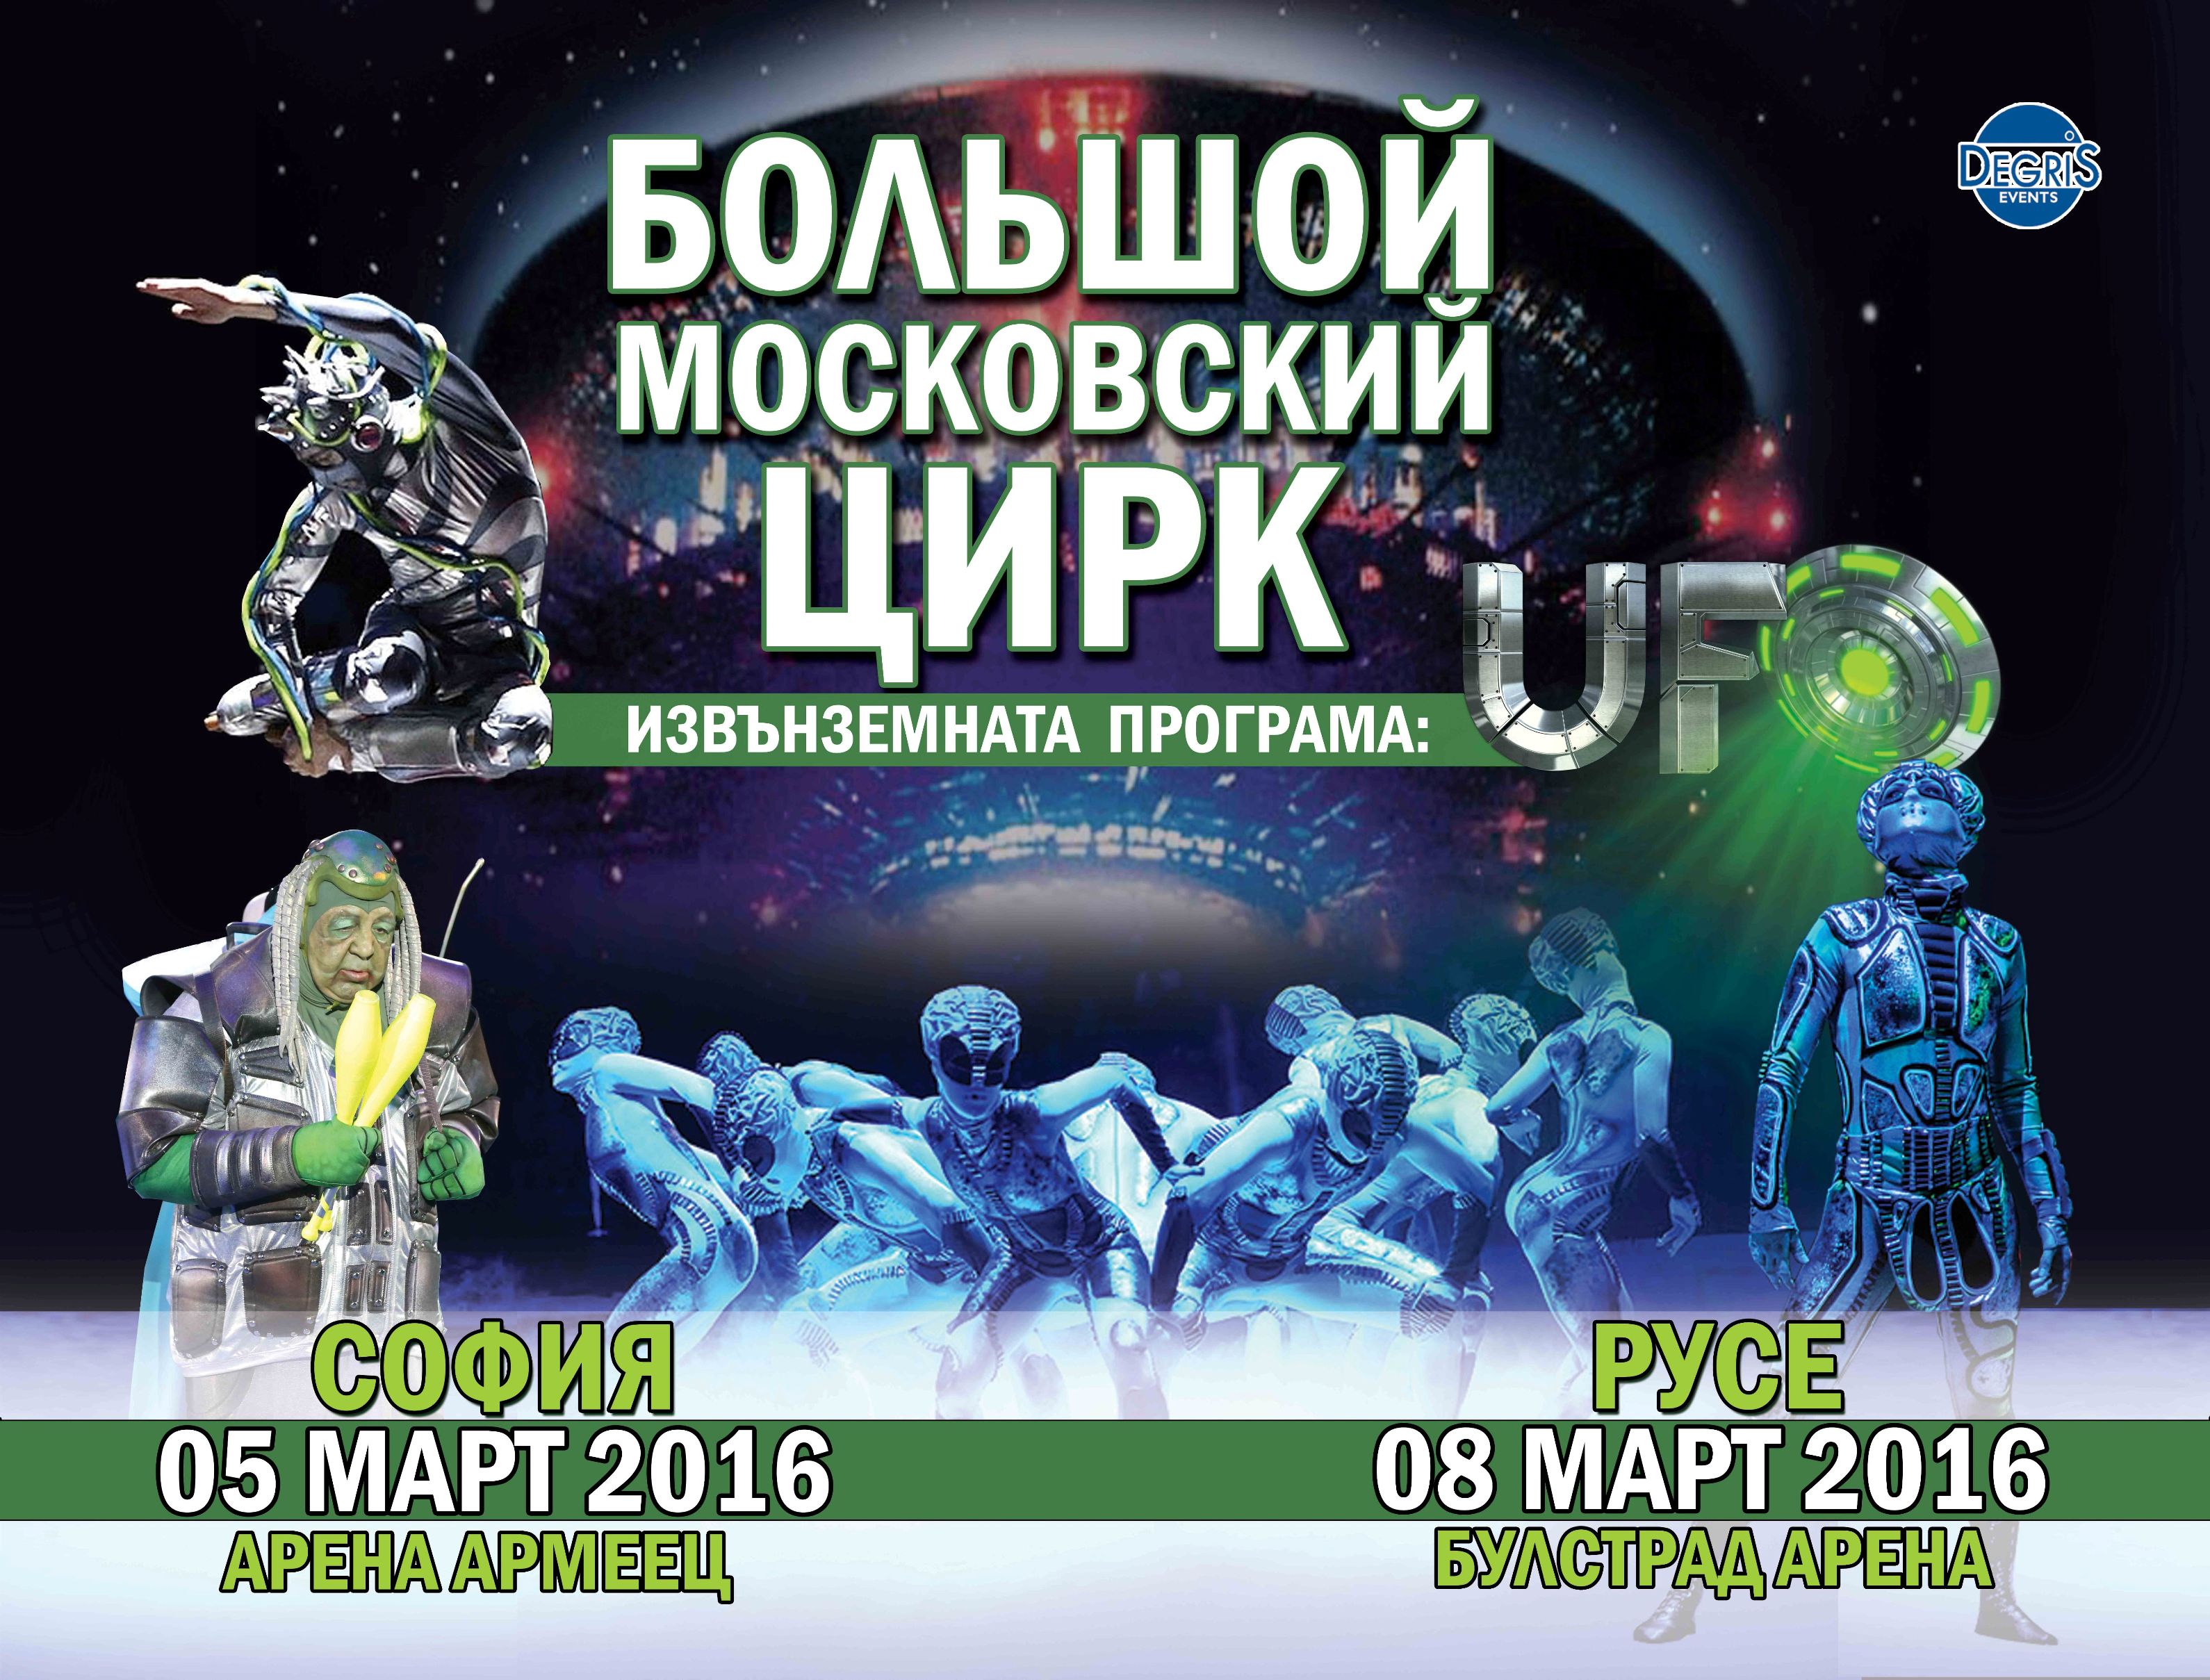 ”Большой Московский Цирк” с извънземно шоу ”UFO”